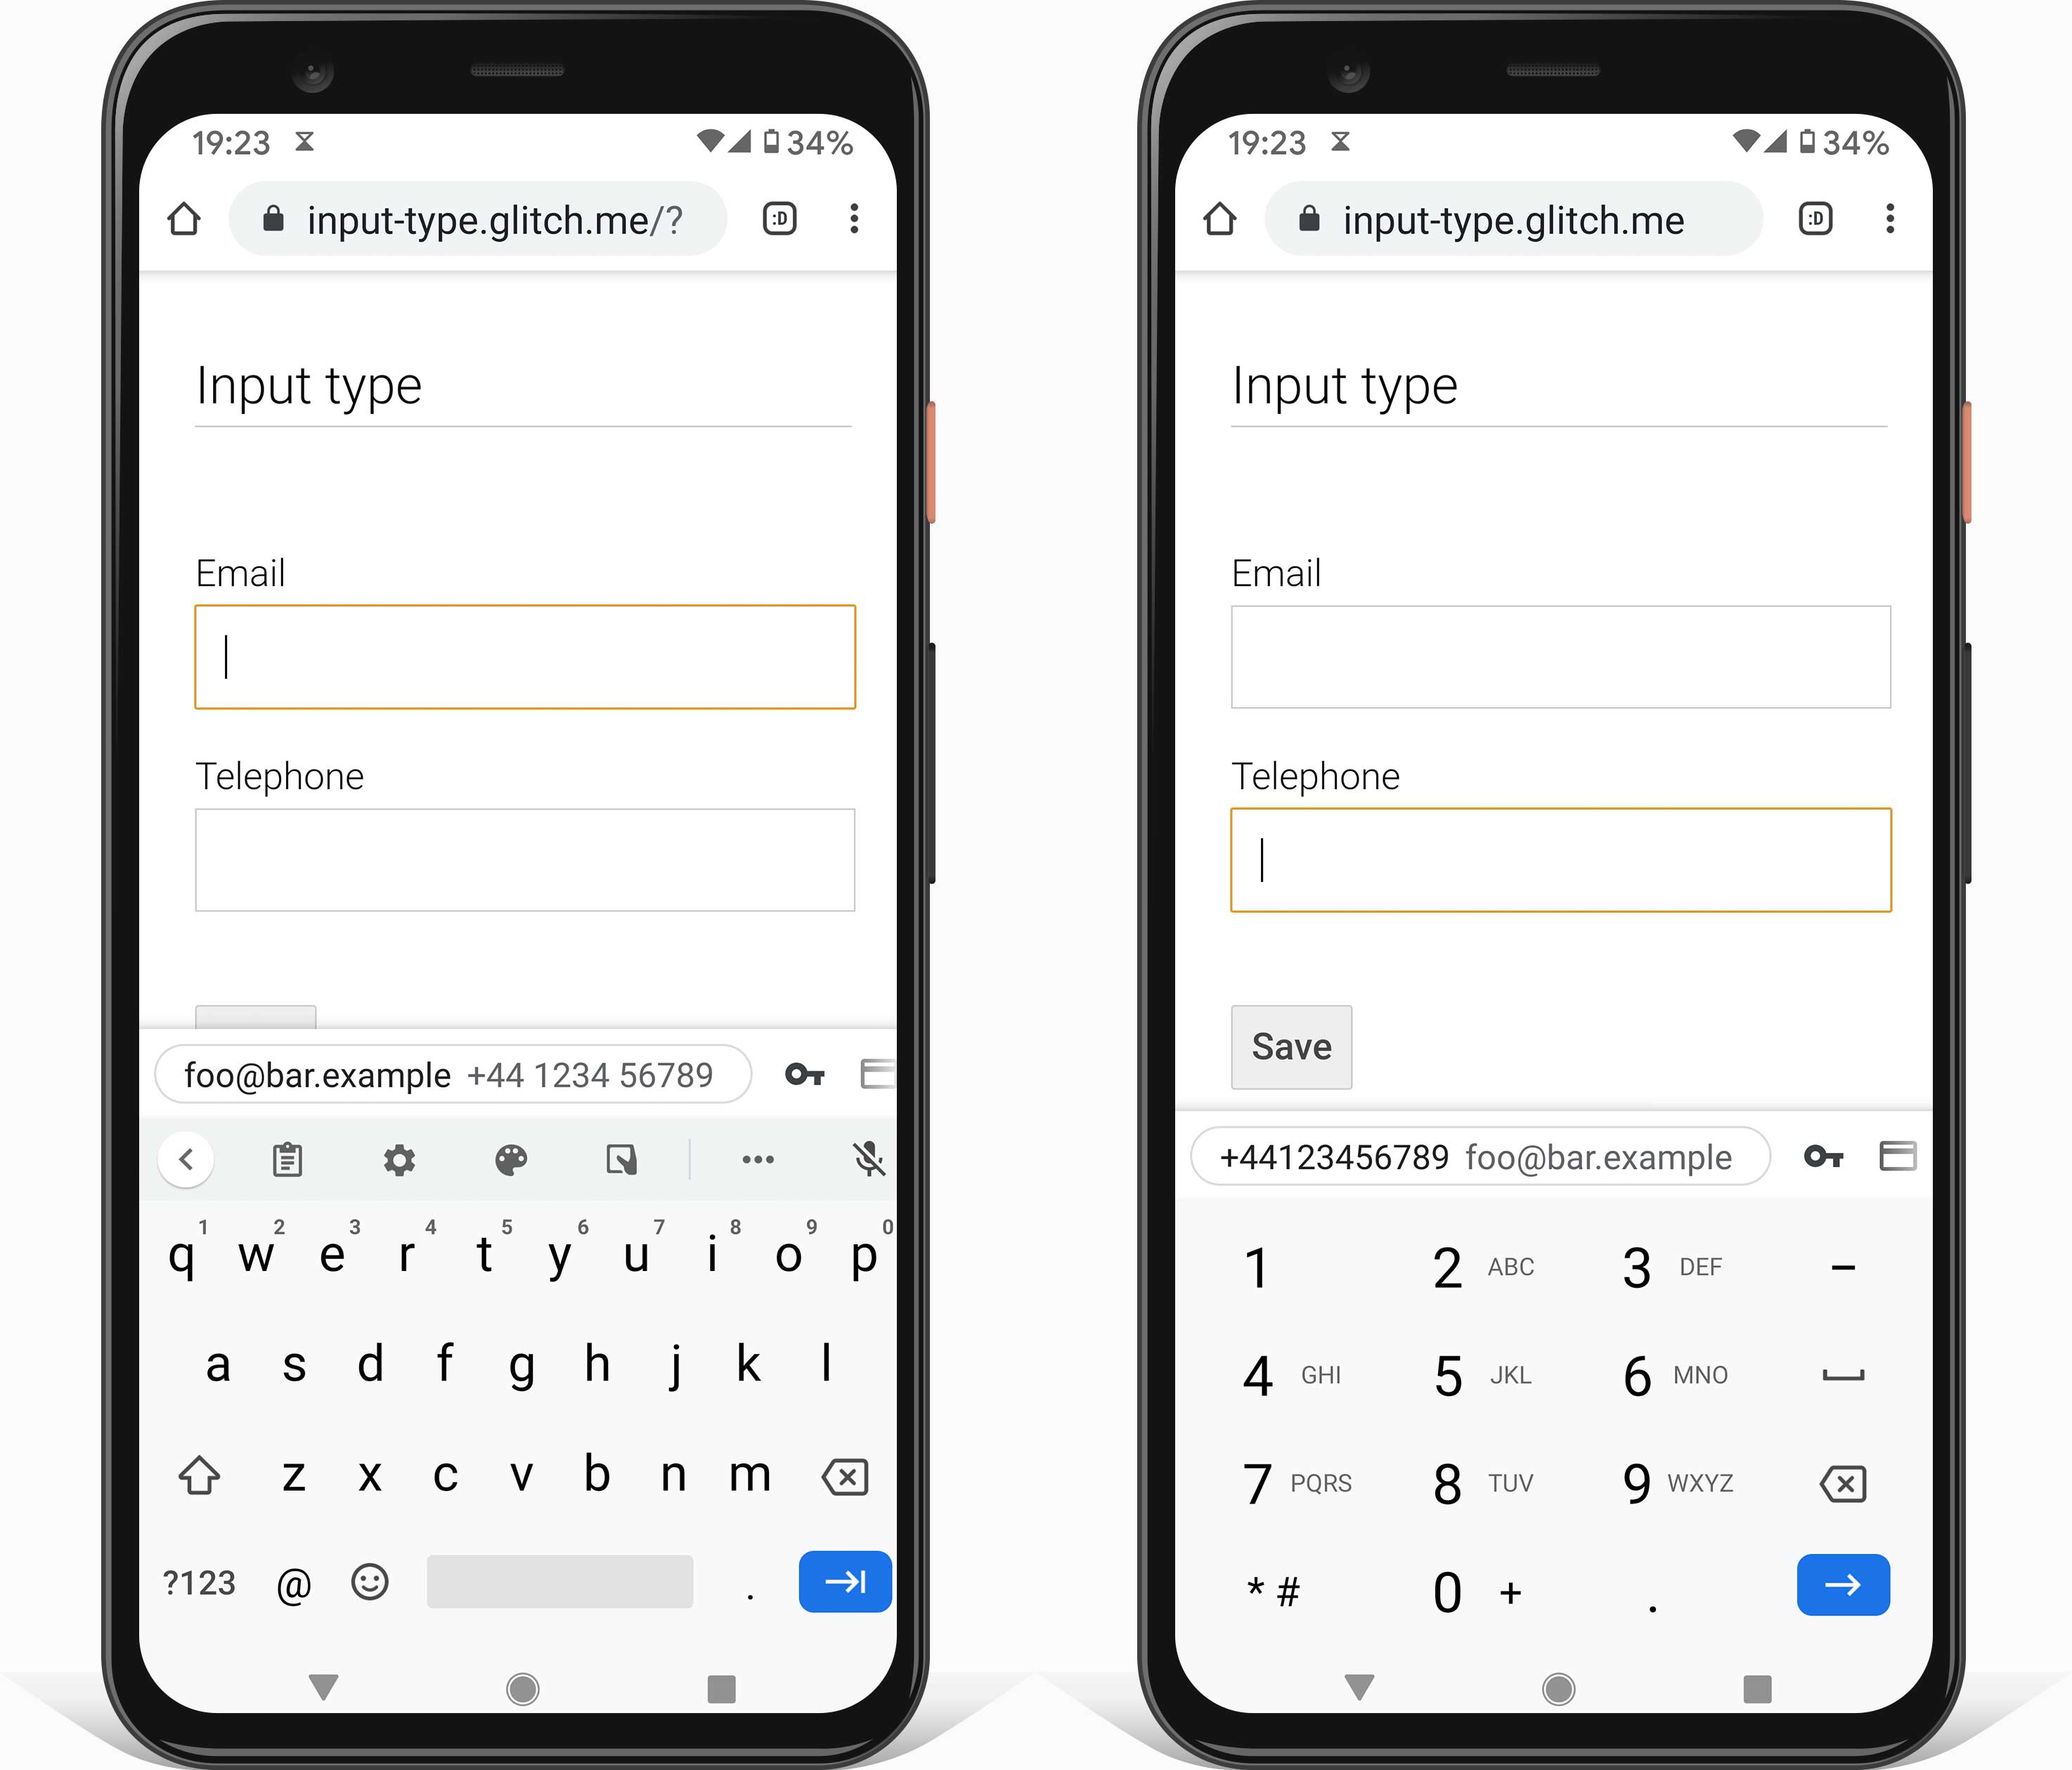 Android telefonların, e-posta adresi girmek (tür=e-posta ile) ve telefon numarası (type=tel) ile girmek için uygun bir klavyeyi gösteren iki ekran görüntüsü.